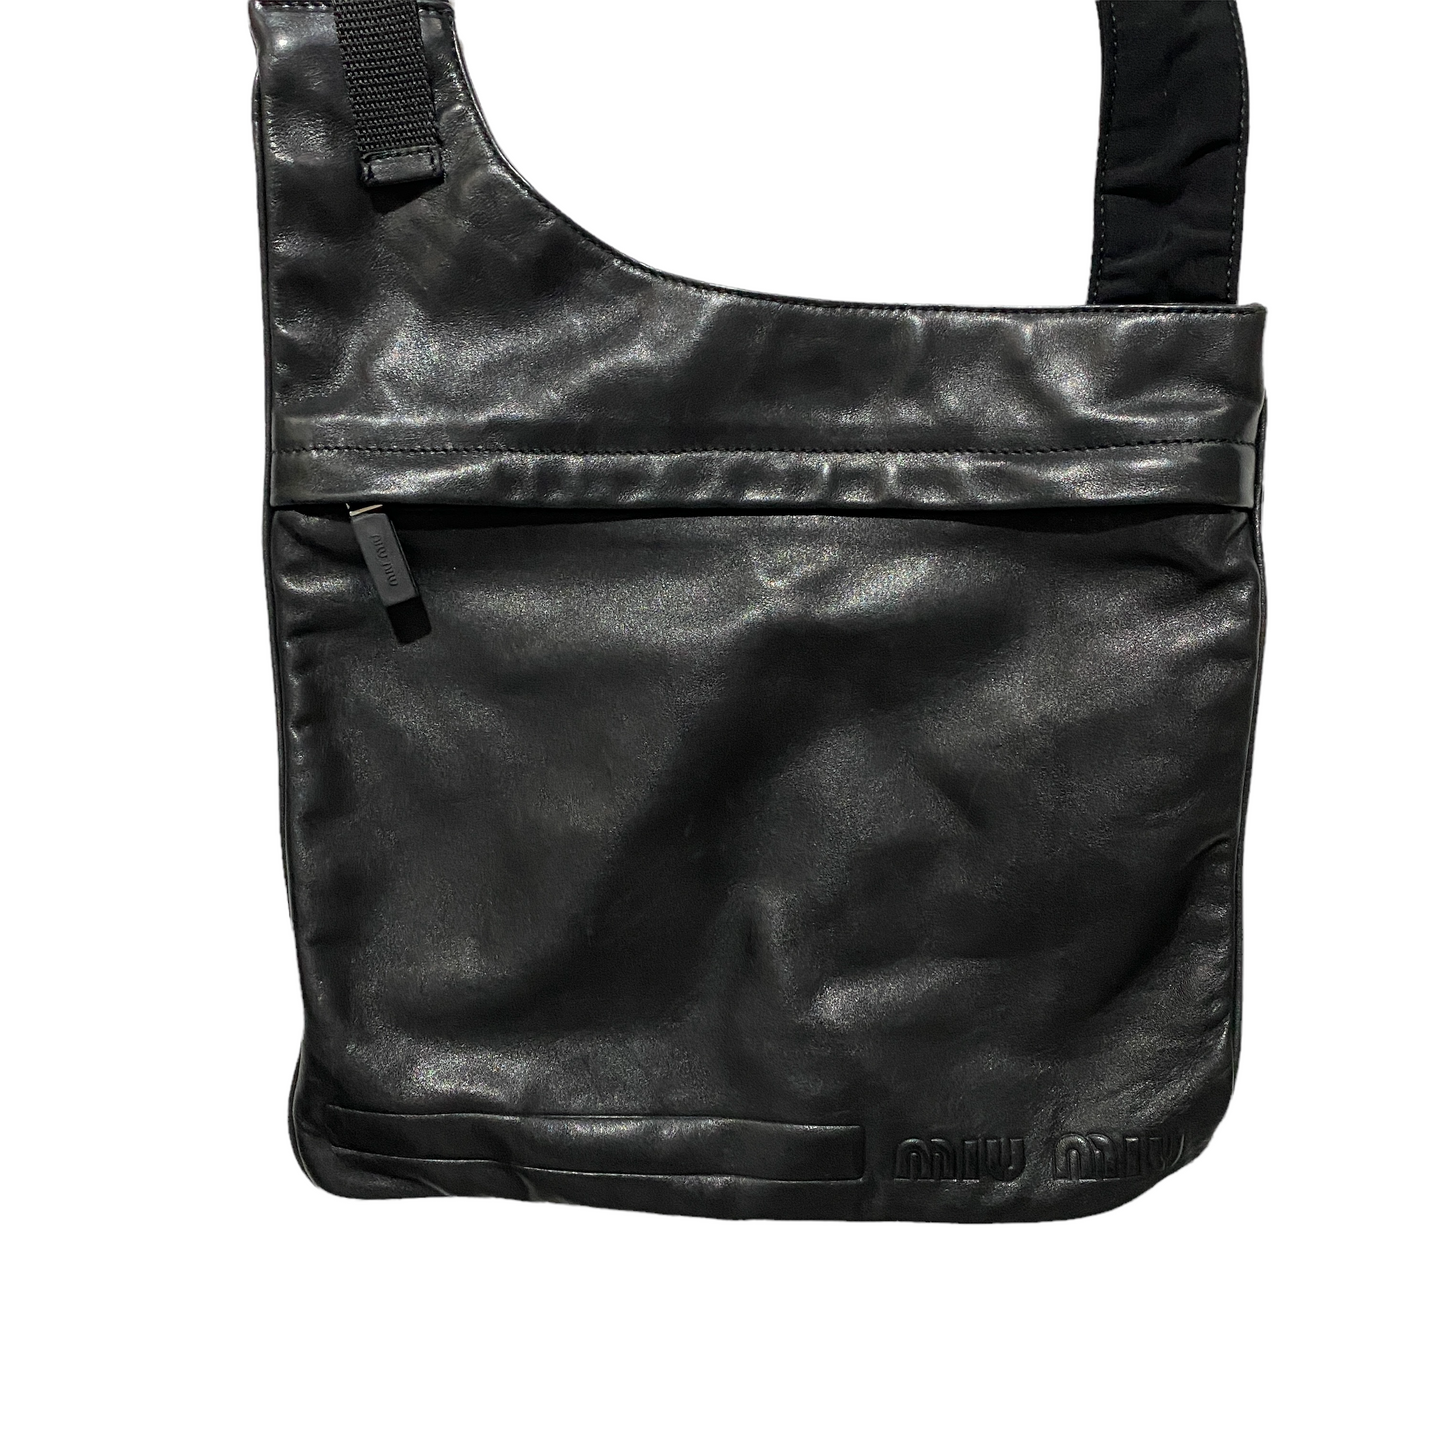 00's Miu Miu Leather Bag